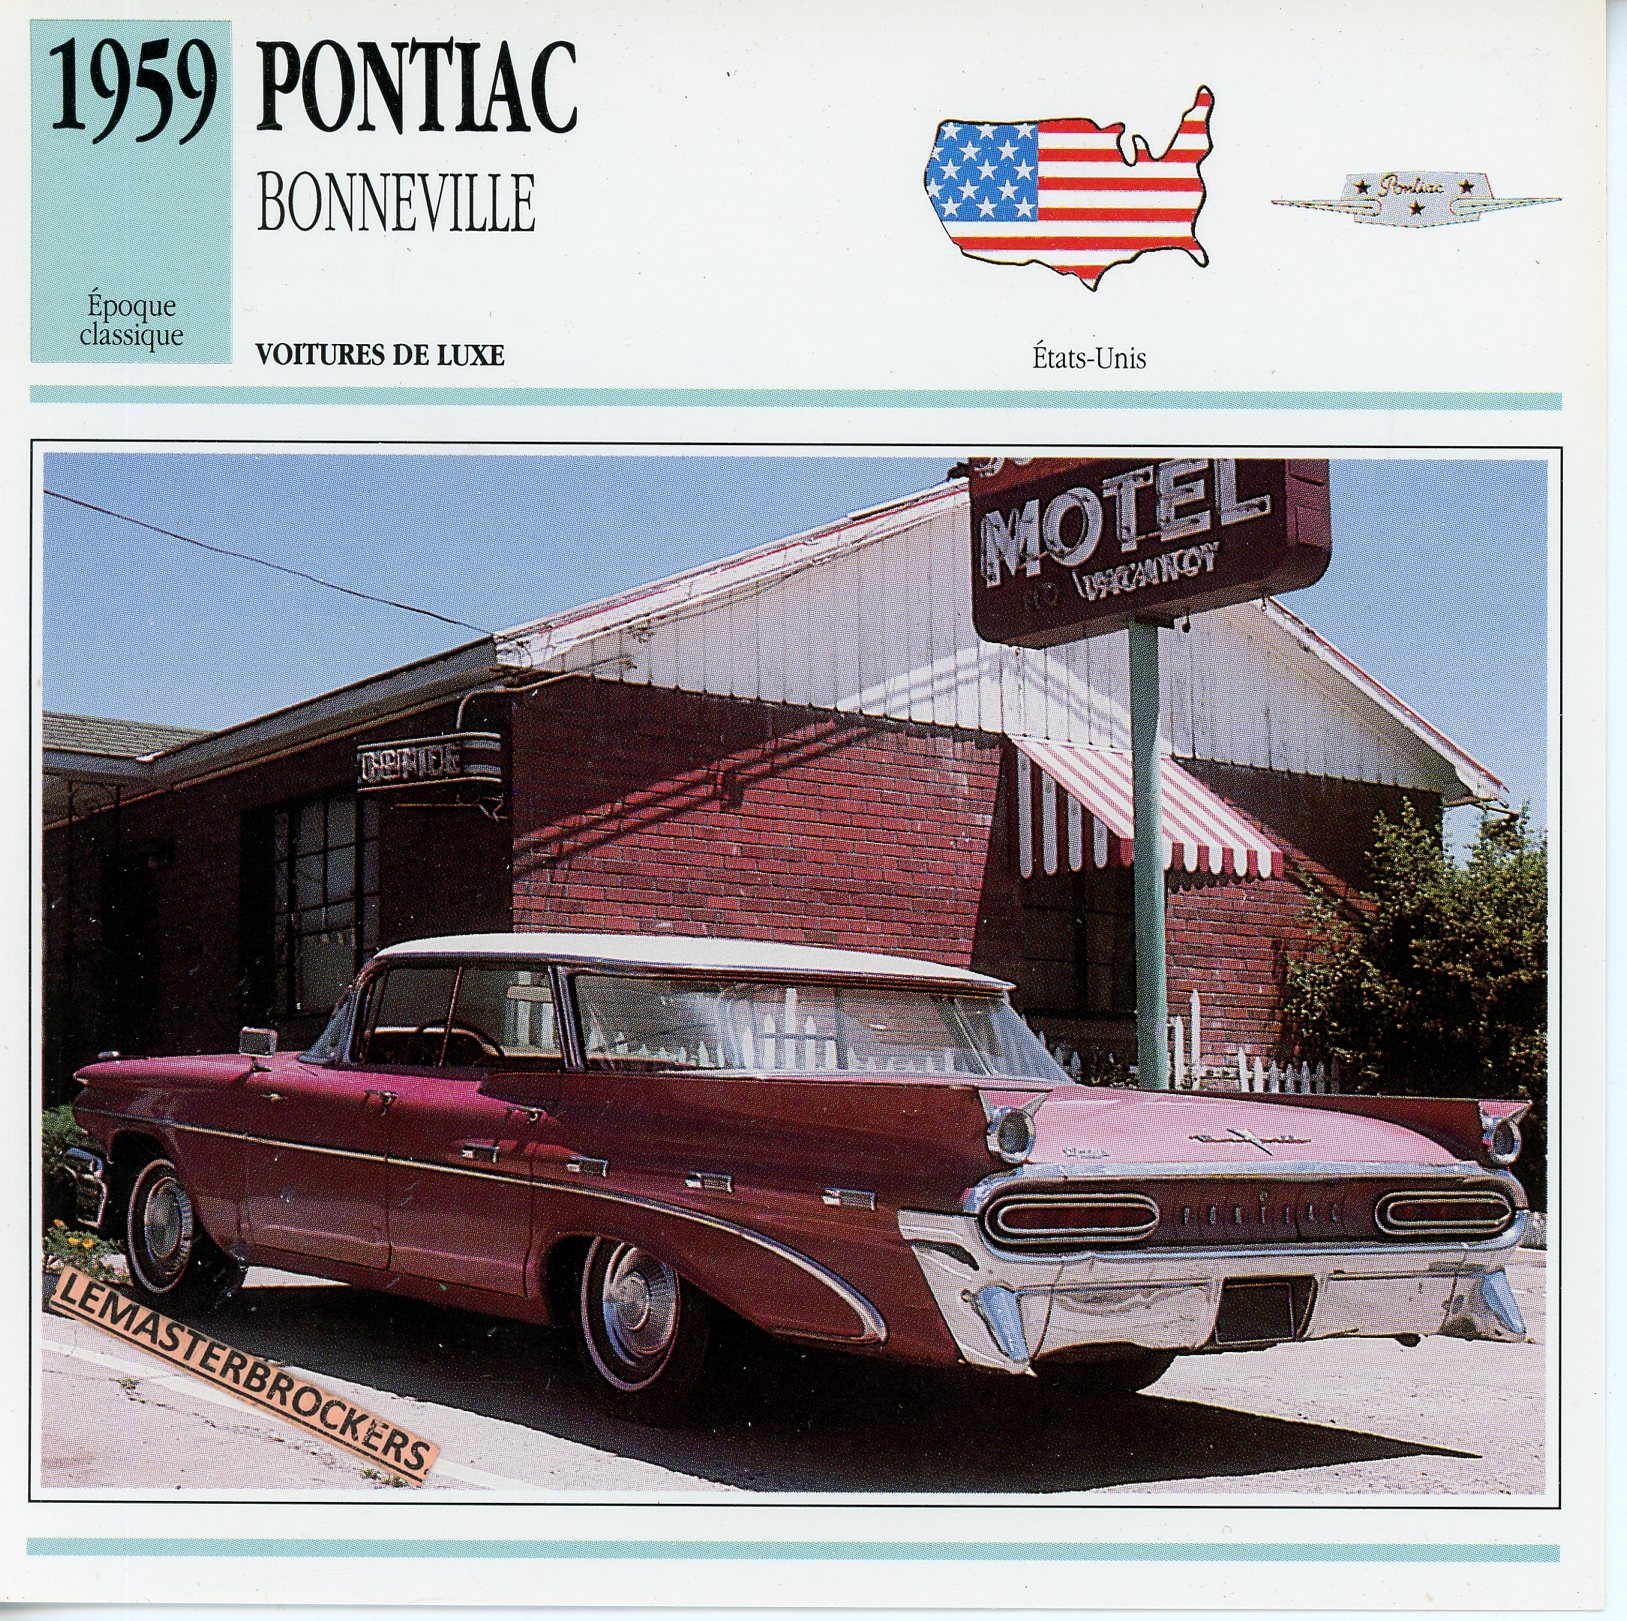 PONTIAC-BONNEVILLE-1959-FICHE-AUTO-ATLAS-LEMASTERBROCKERS